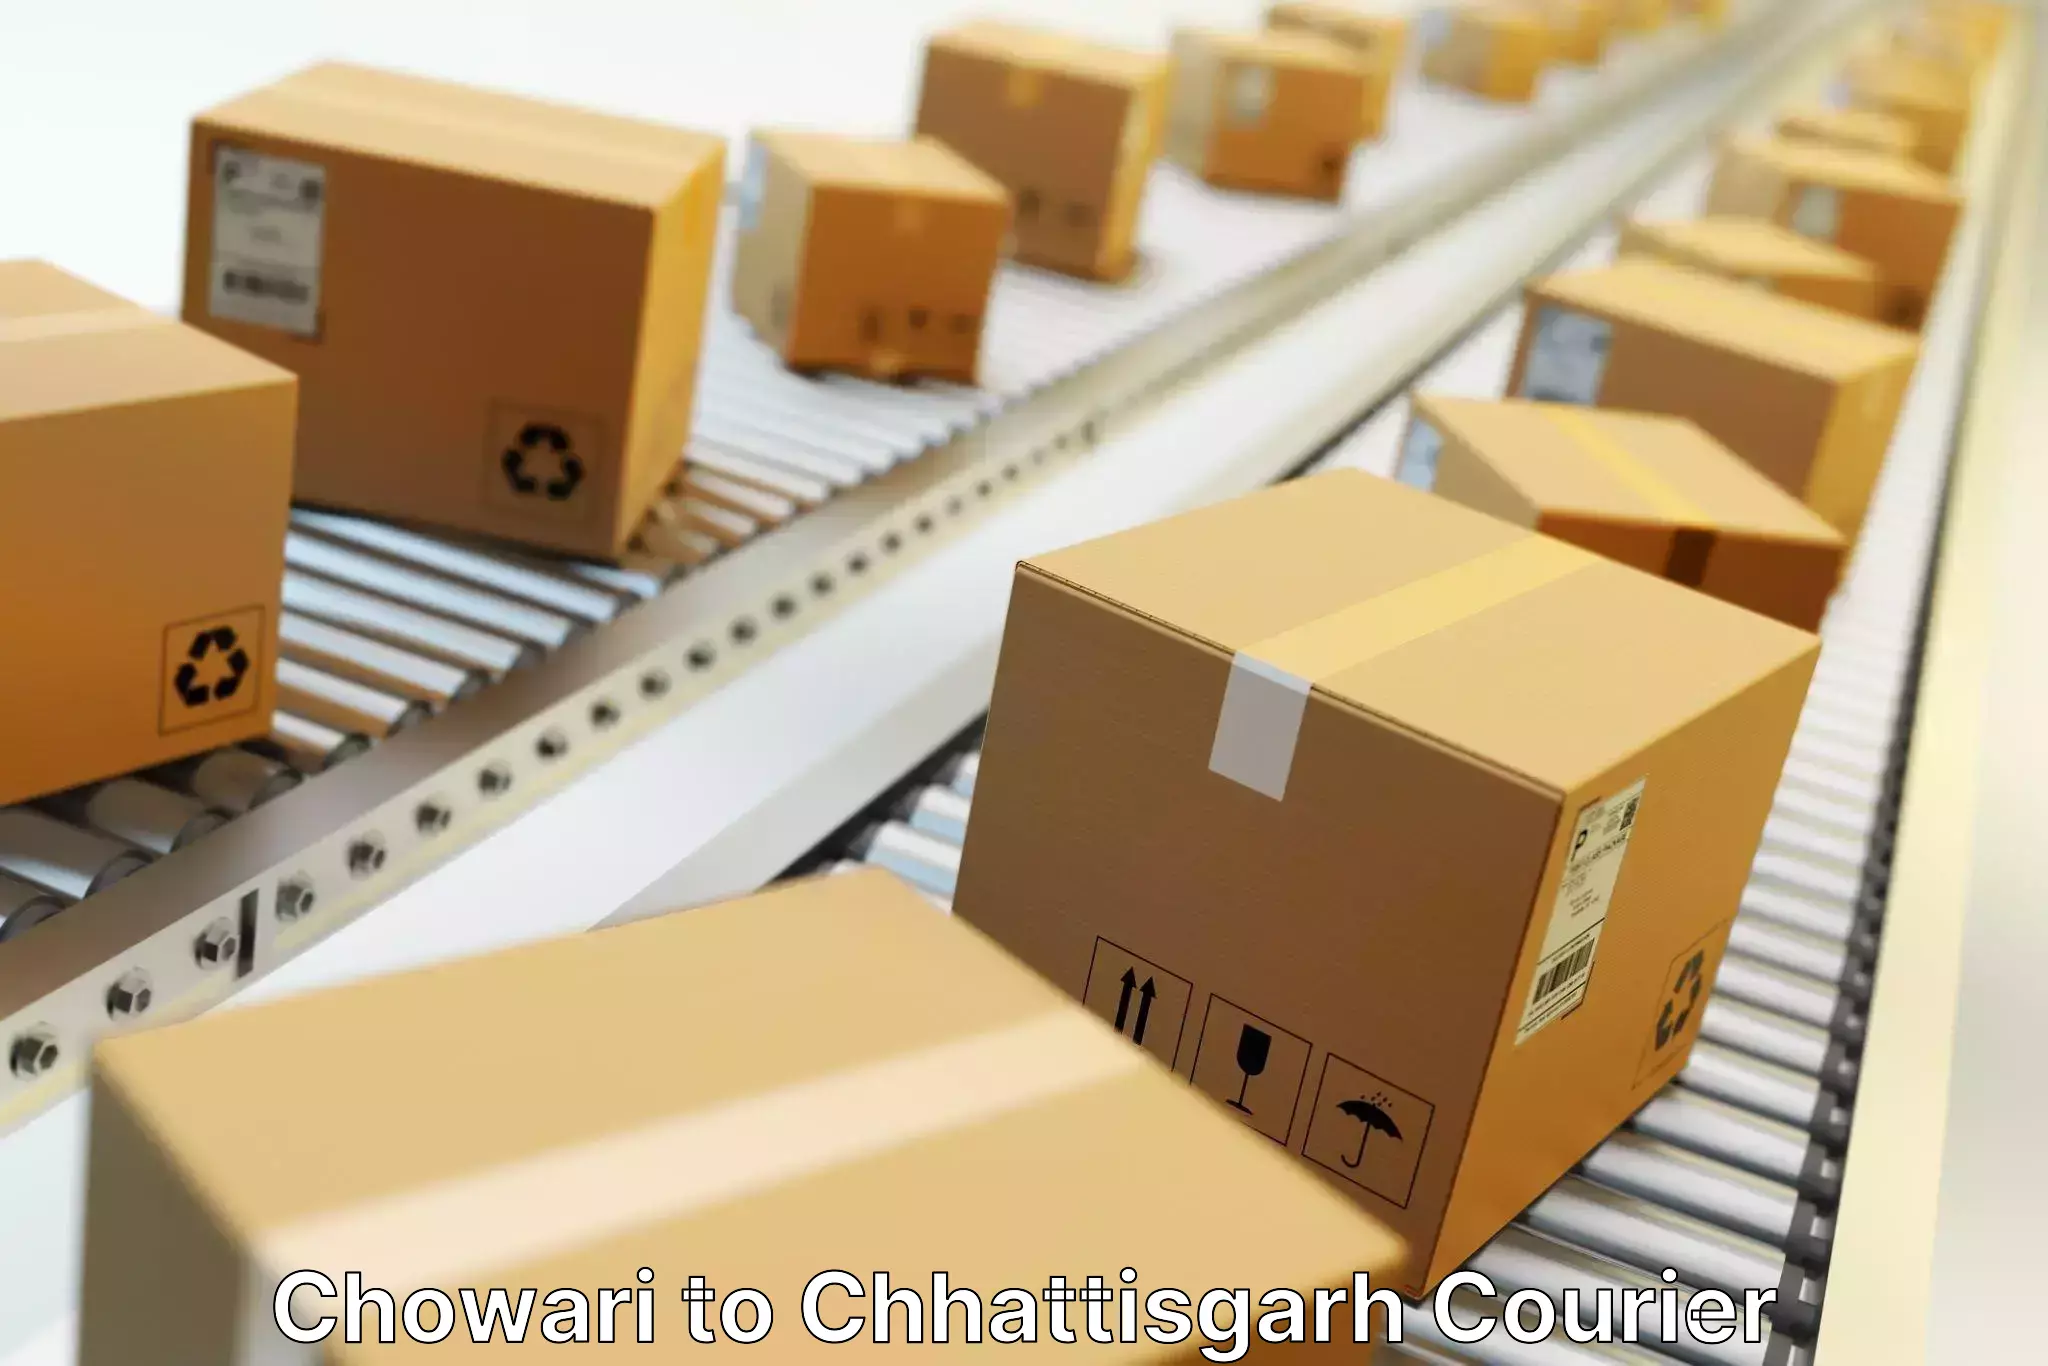 Fast delivery service Chowari to Korea Chhattisgarh